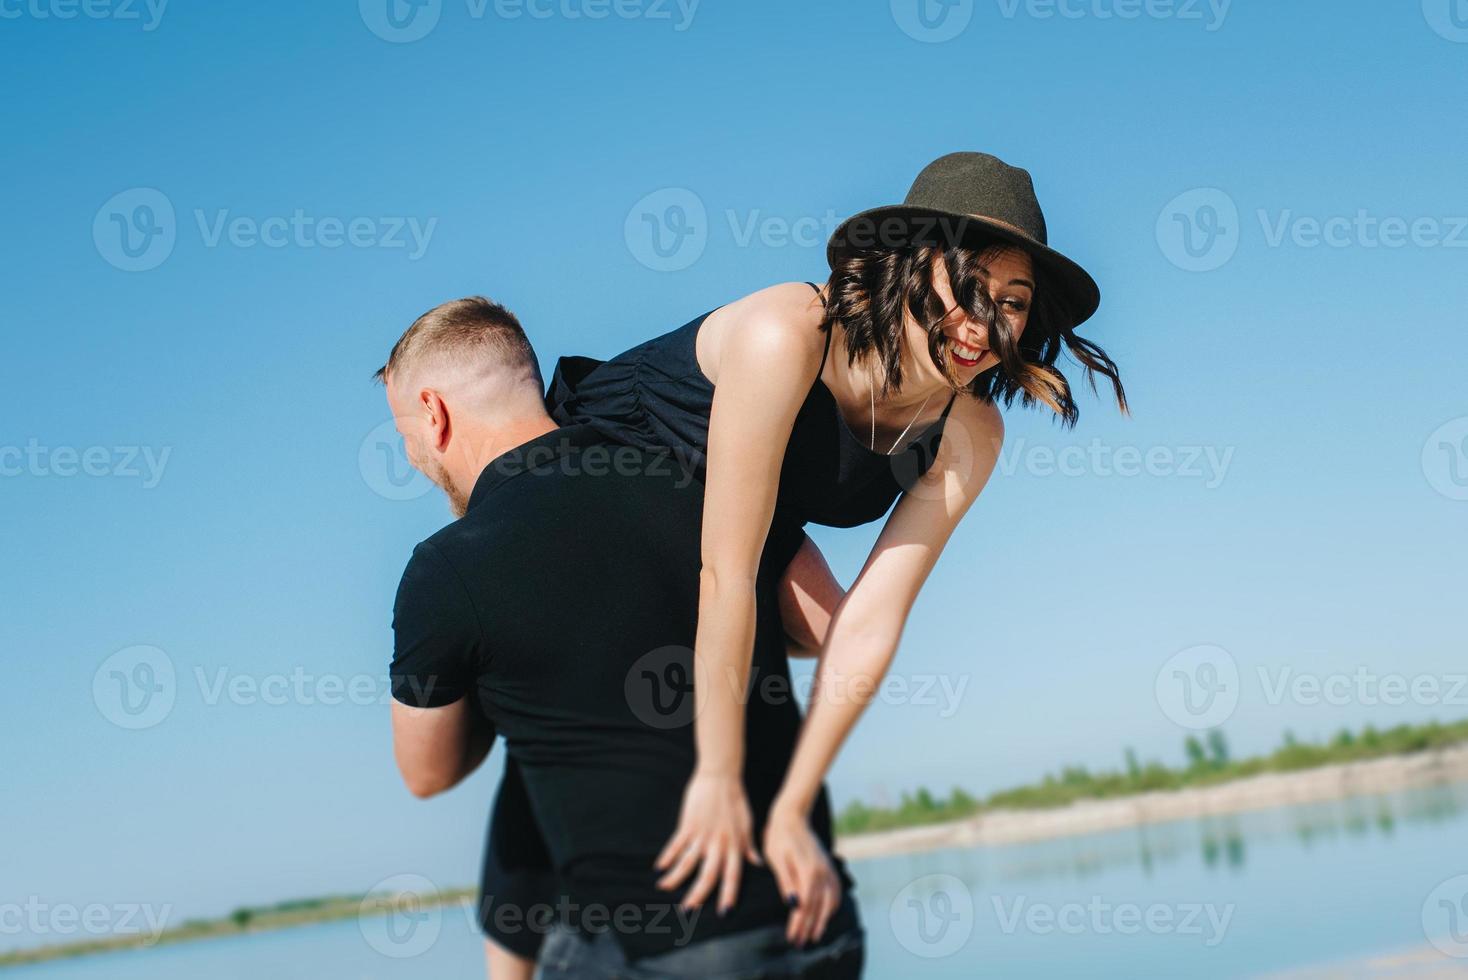 jovem casal um cara com uma garota em roupas pretas está andando na areia branca foto